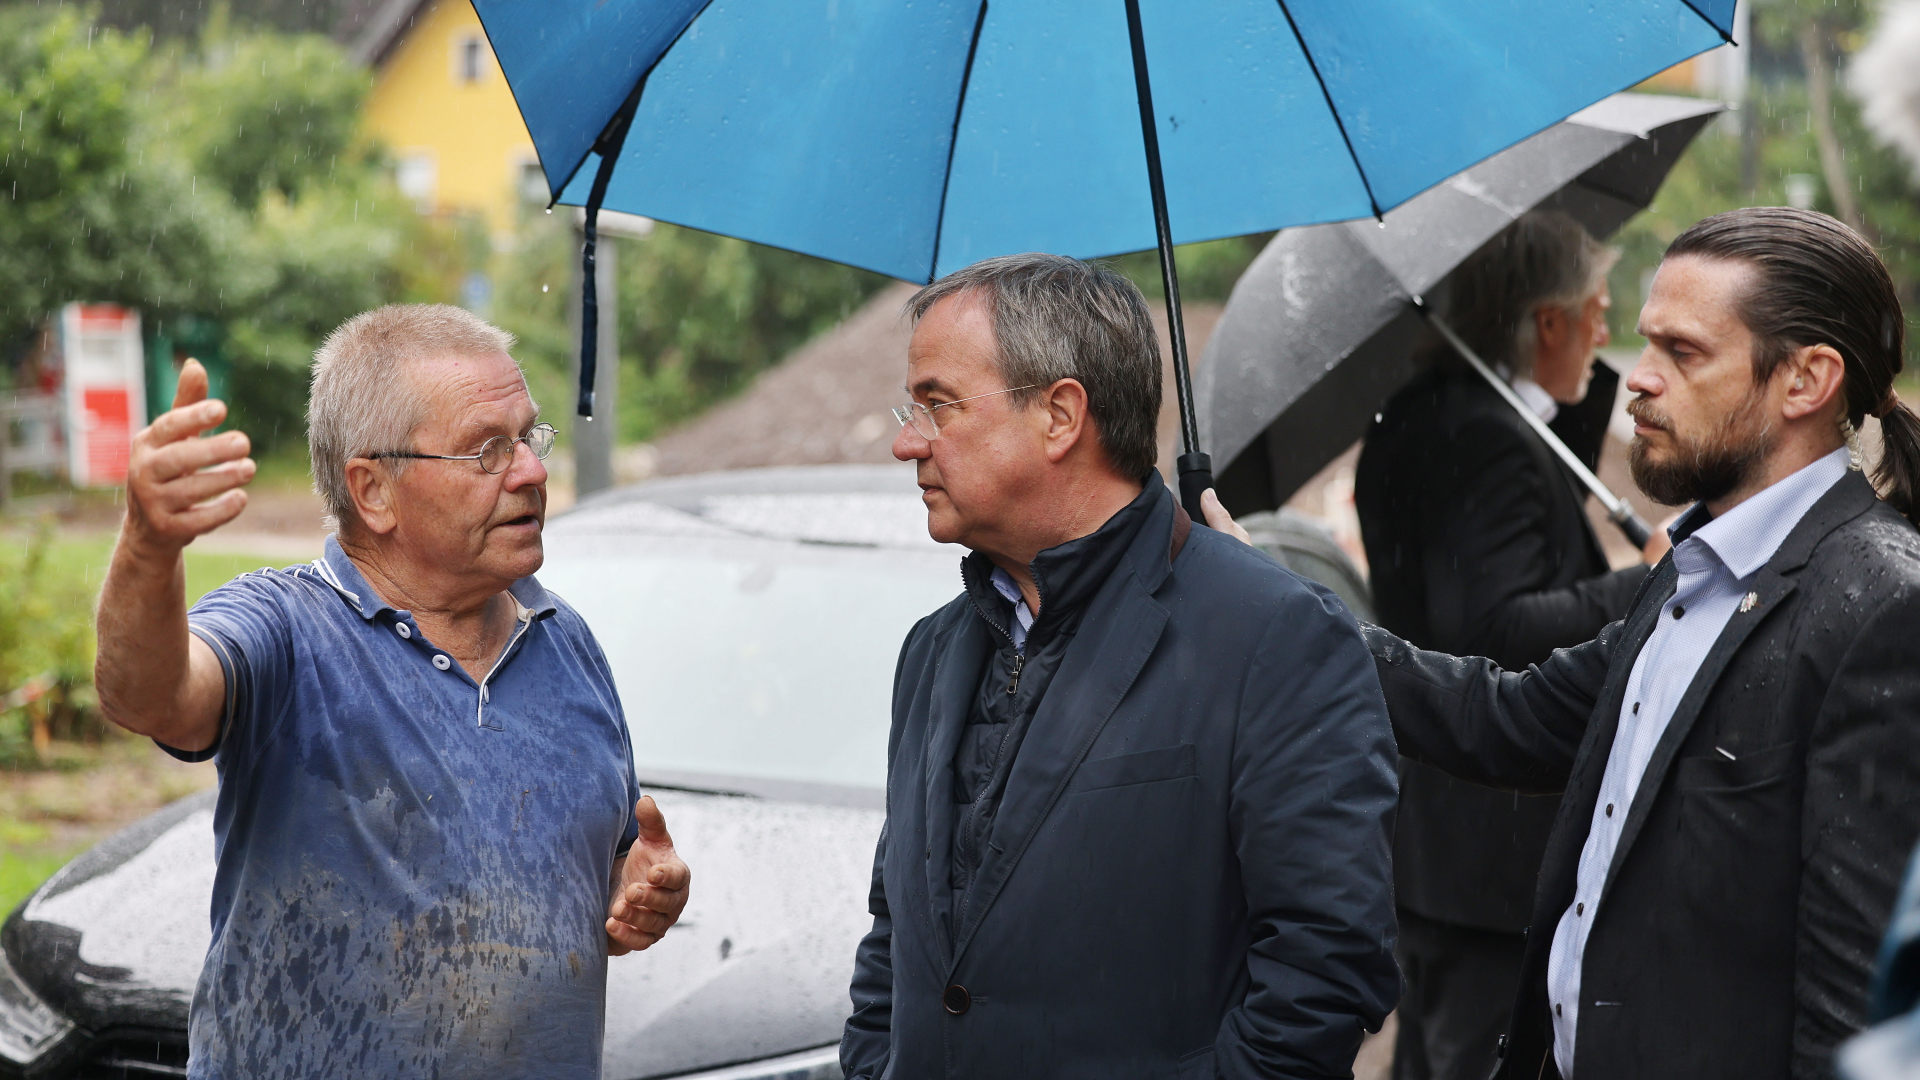 Ein Sicherheitsbeamter hält einen Regenschirm über Armin Laschet während er im Regen mit einem vom Hochwasser betroffenen Mann spricht.  | dpa